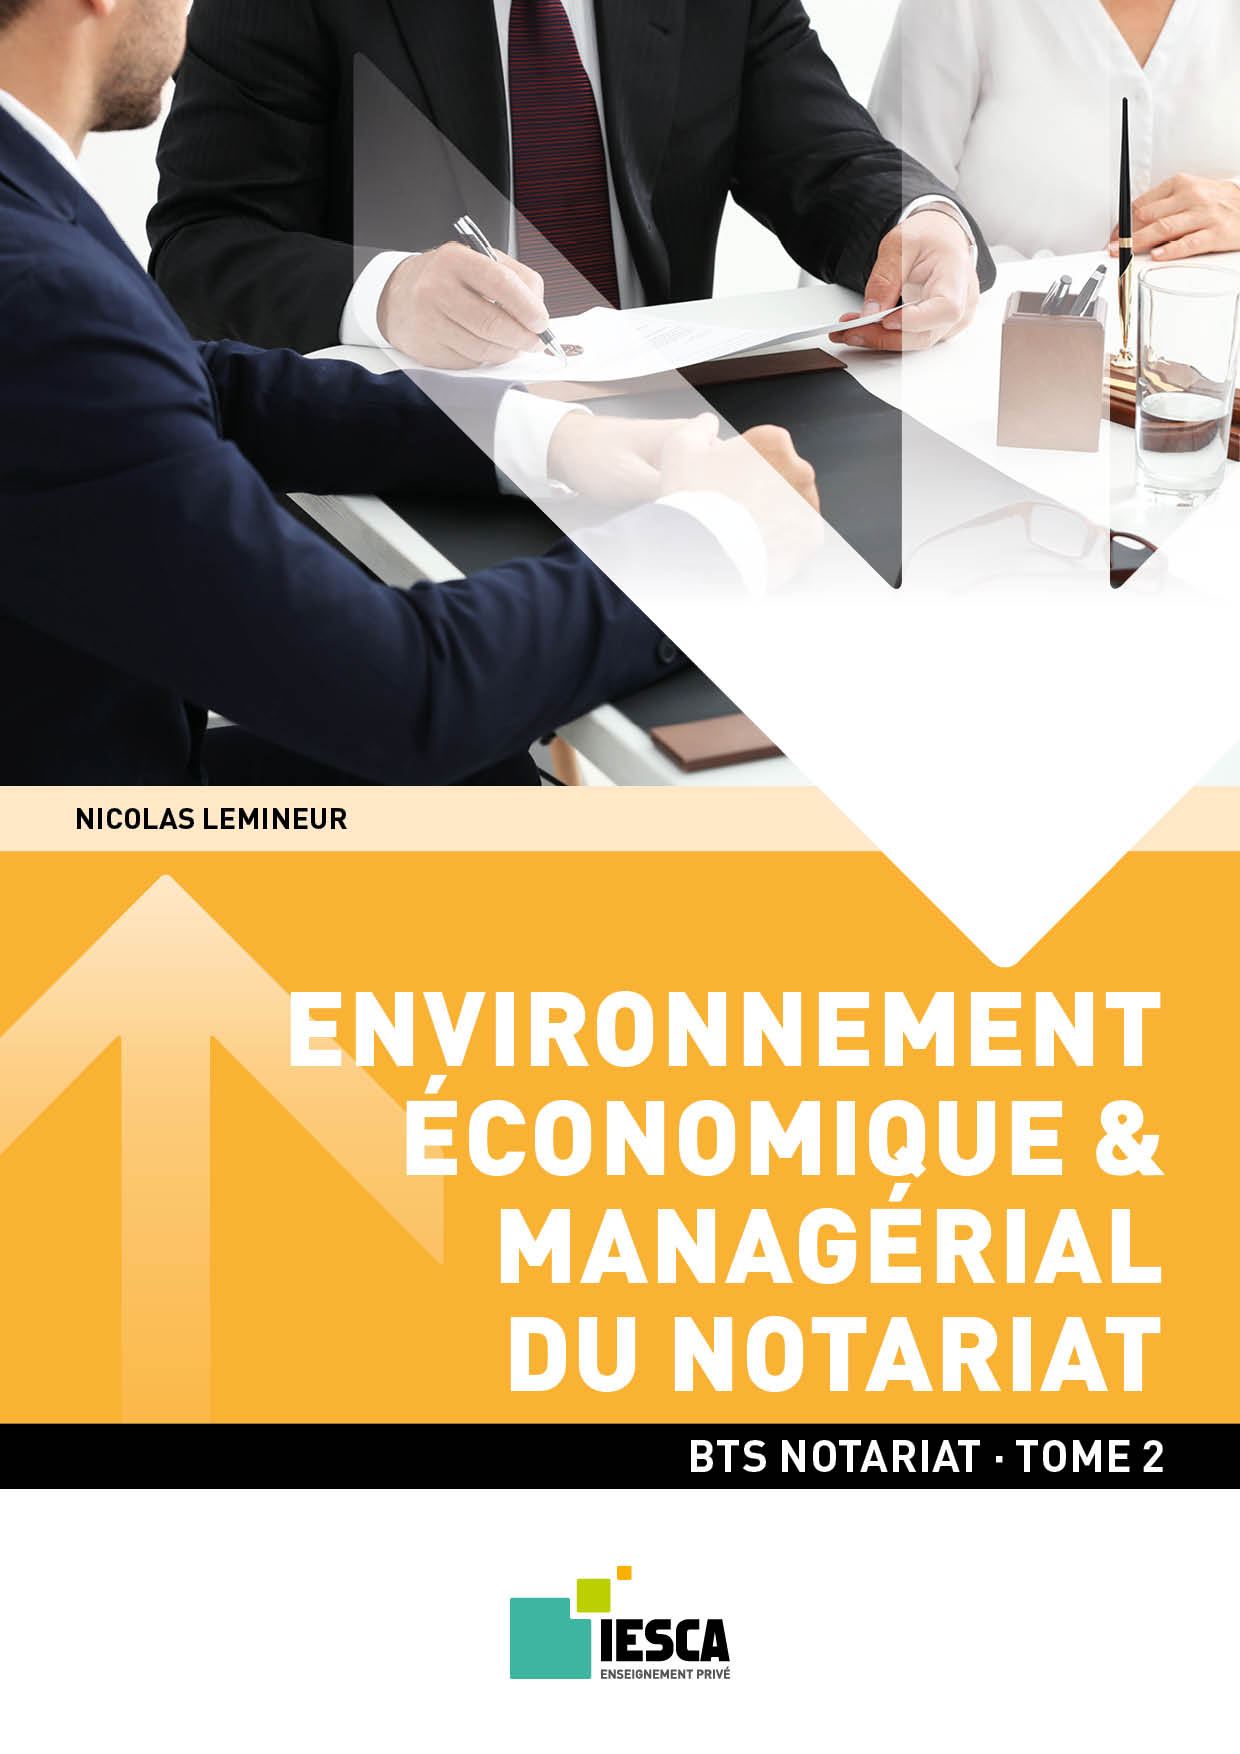 BTS NOTARIAT - Environnement économique et managérial du notariat - Tome 2